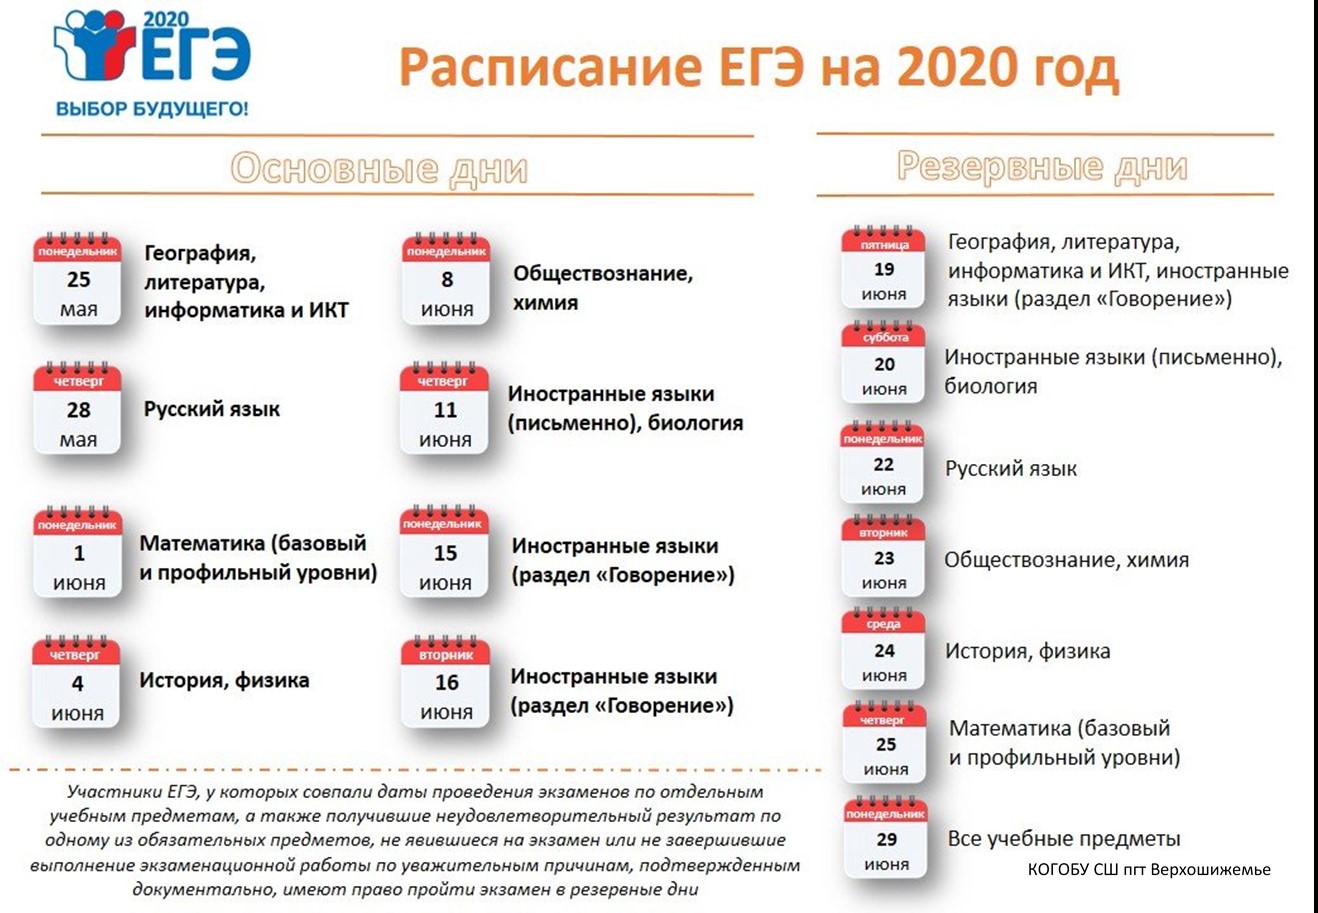 Какое егэ сдавать обязательно. ЕГЭ 2020 даты проведения. Сроки проведения единого государственного экзамена в 2020 году. ЕГЭ 2020 расписание экзаменов. Резервные даты ЕГЭ 2020.